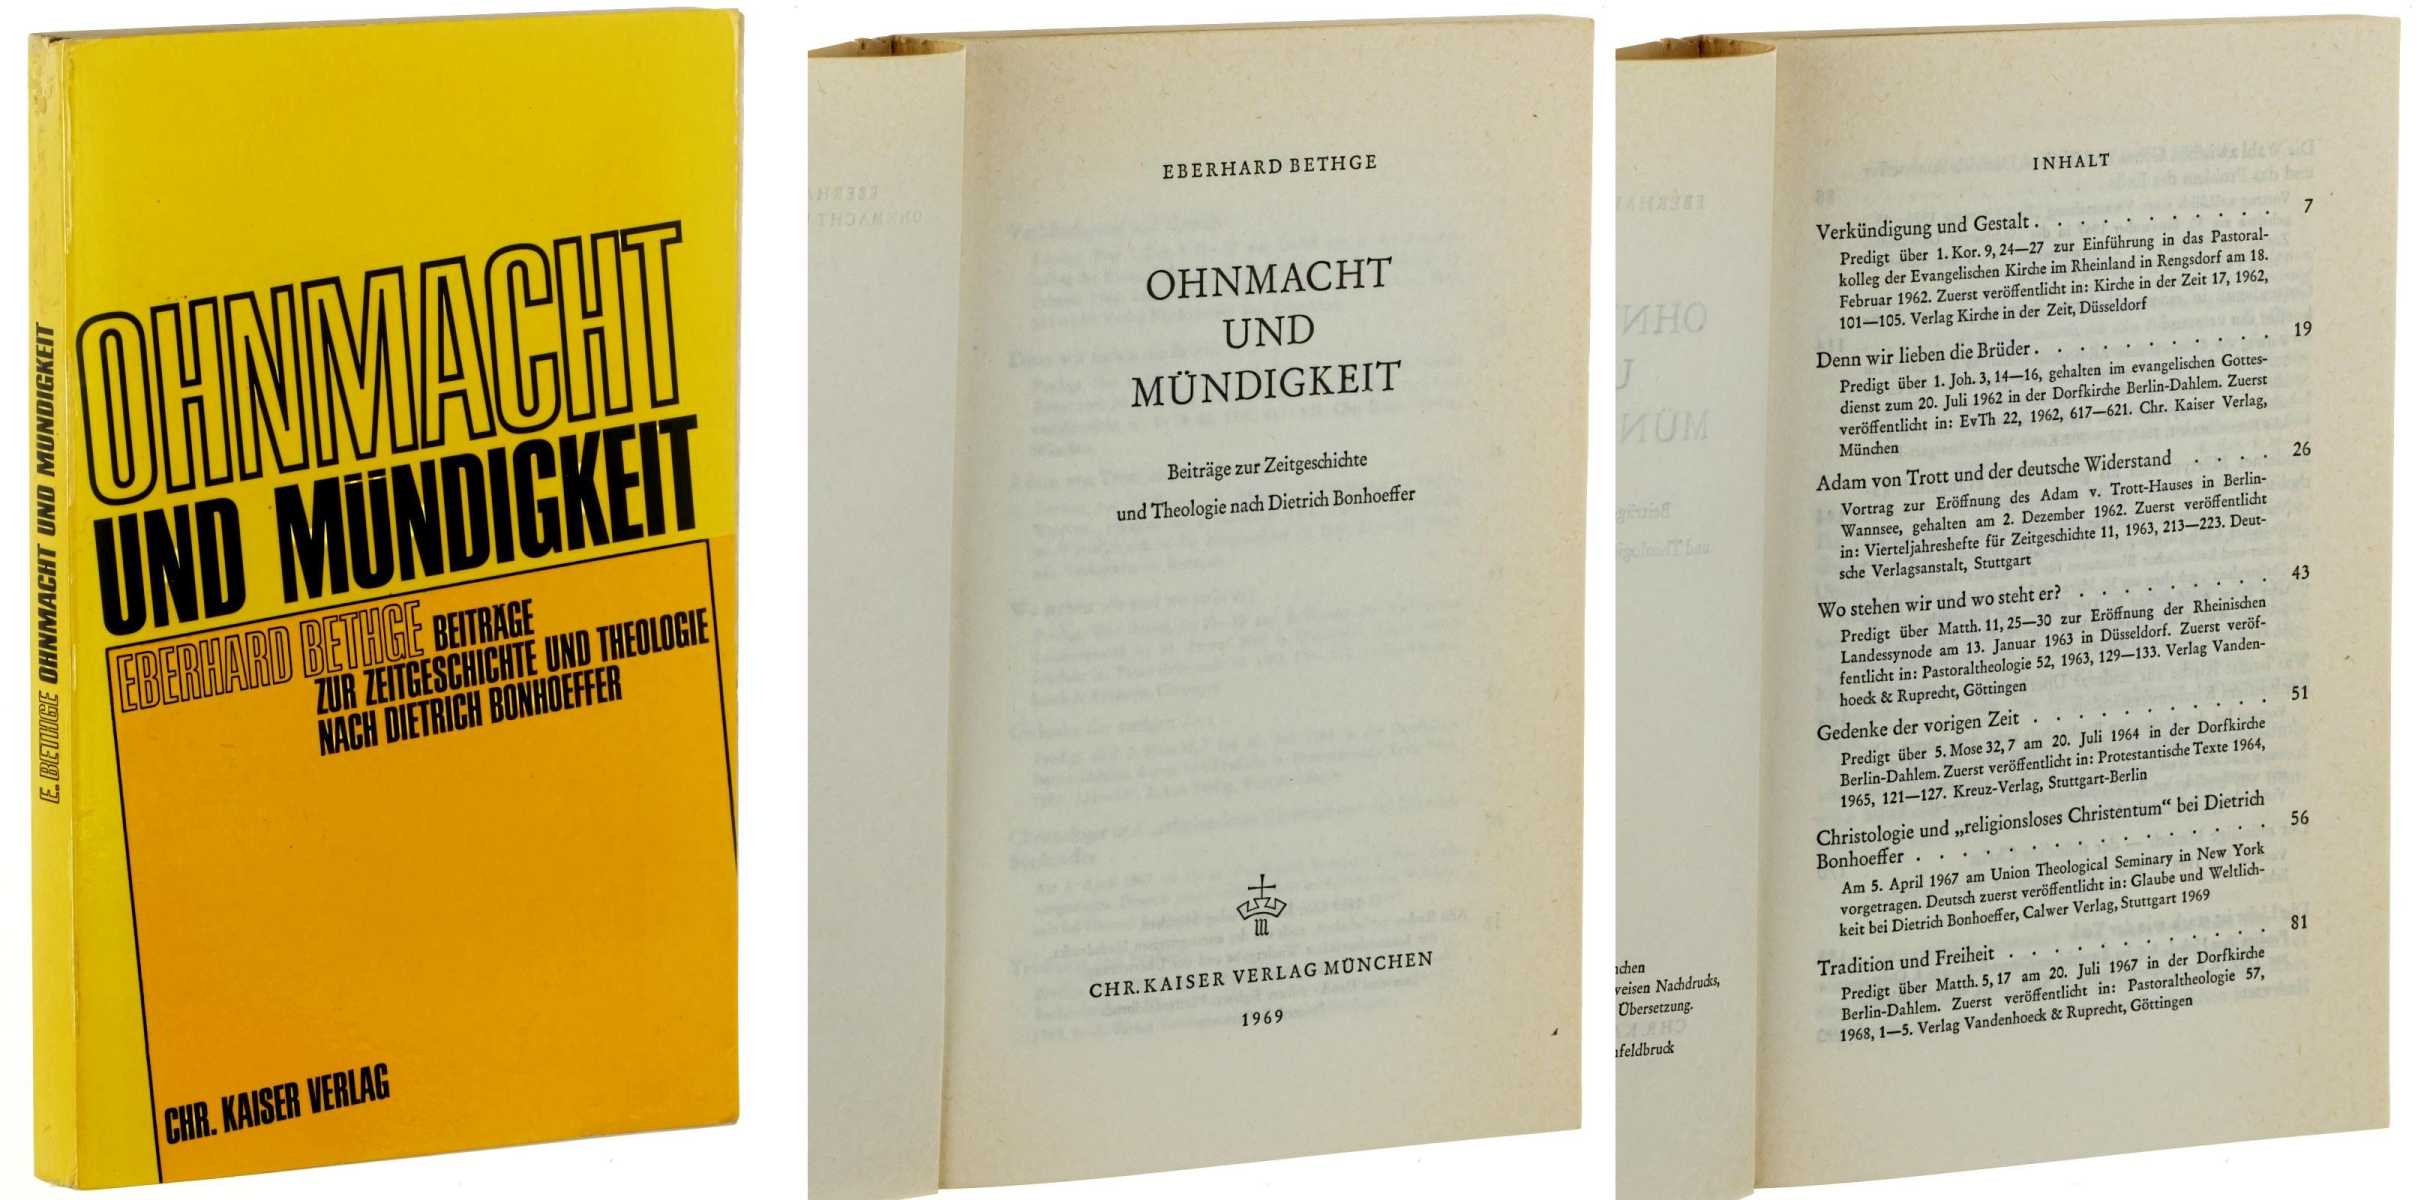 Bethge, Eberhard:  Ohnmacht und Mündigkeit. Beiträge zur Zeitgeschichte und Theologie nach Dietrich Bonhoeffer. 